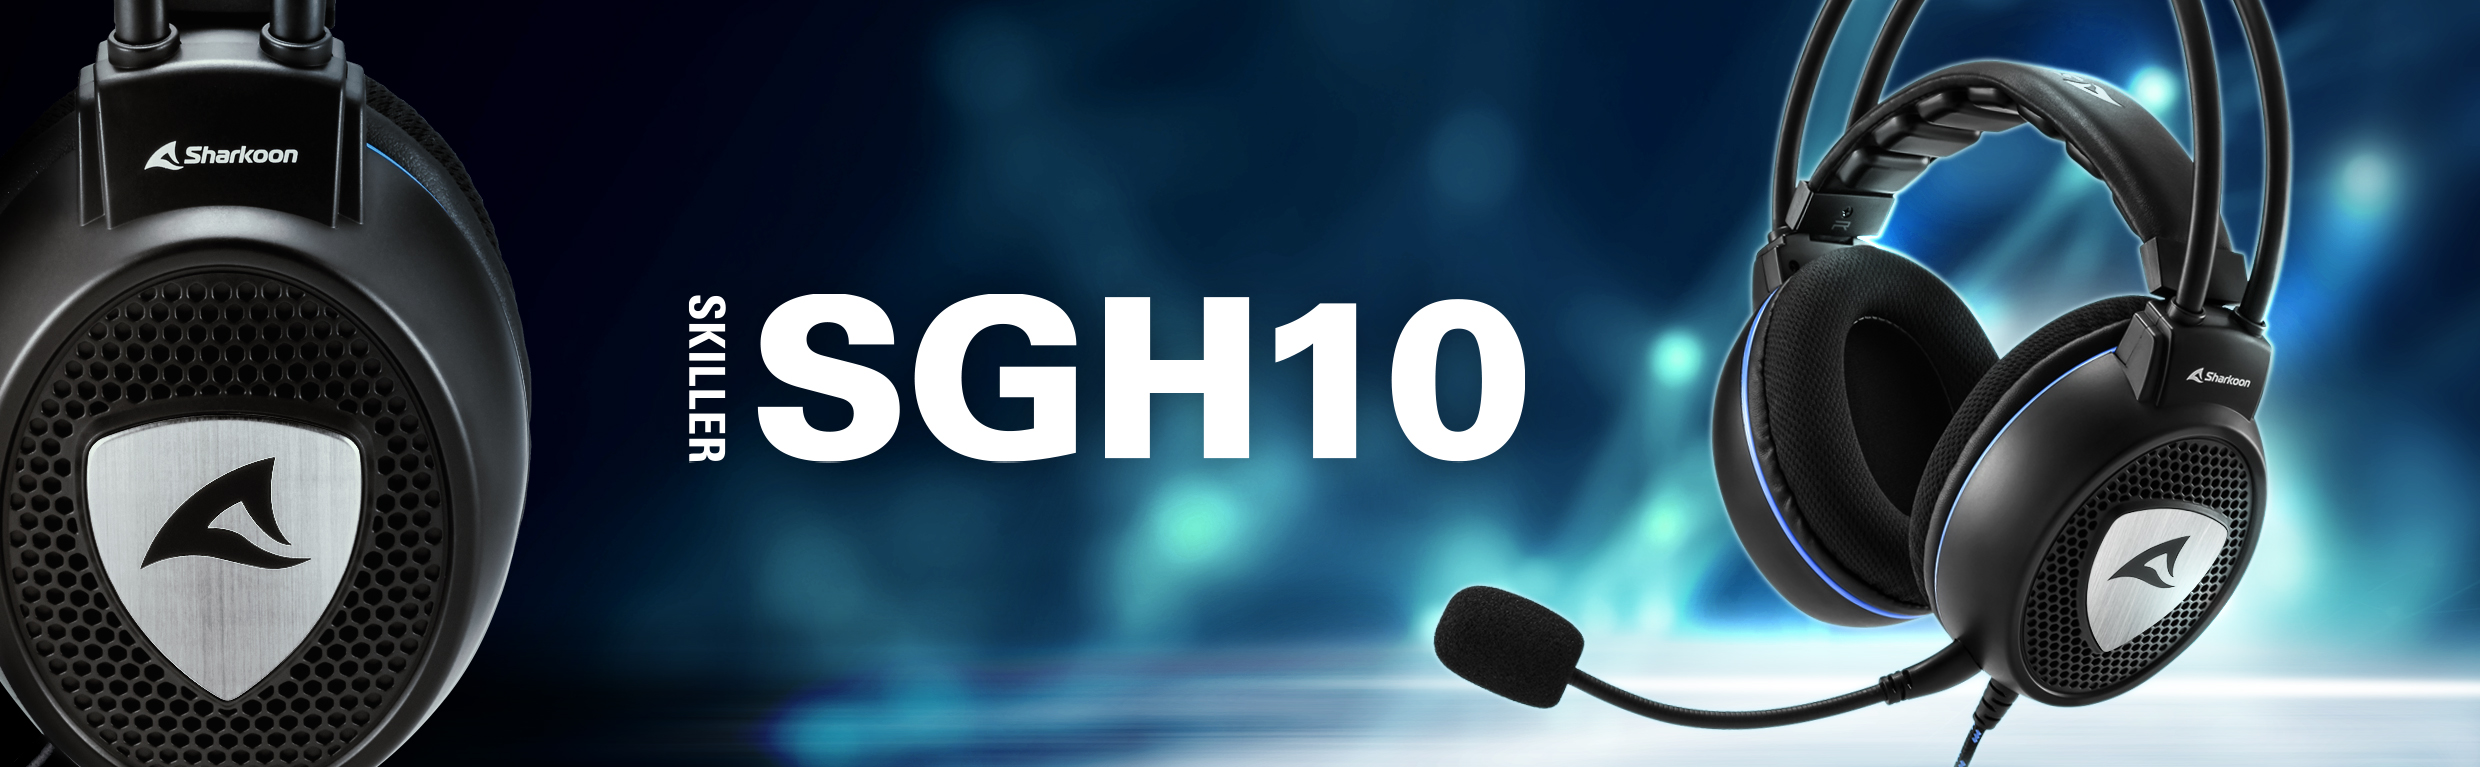 Sharkoon presenta sus nuevos auriculares gaming SKILLER SGH10